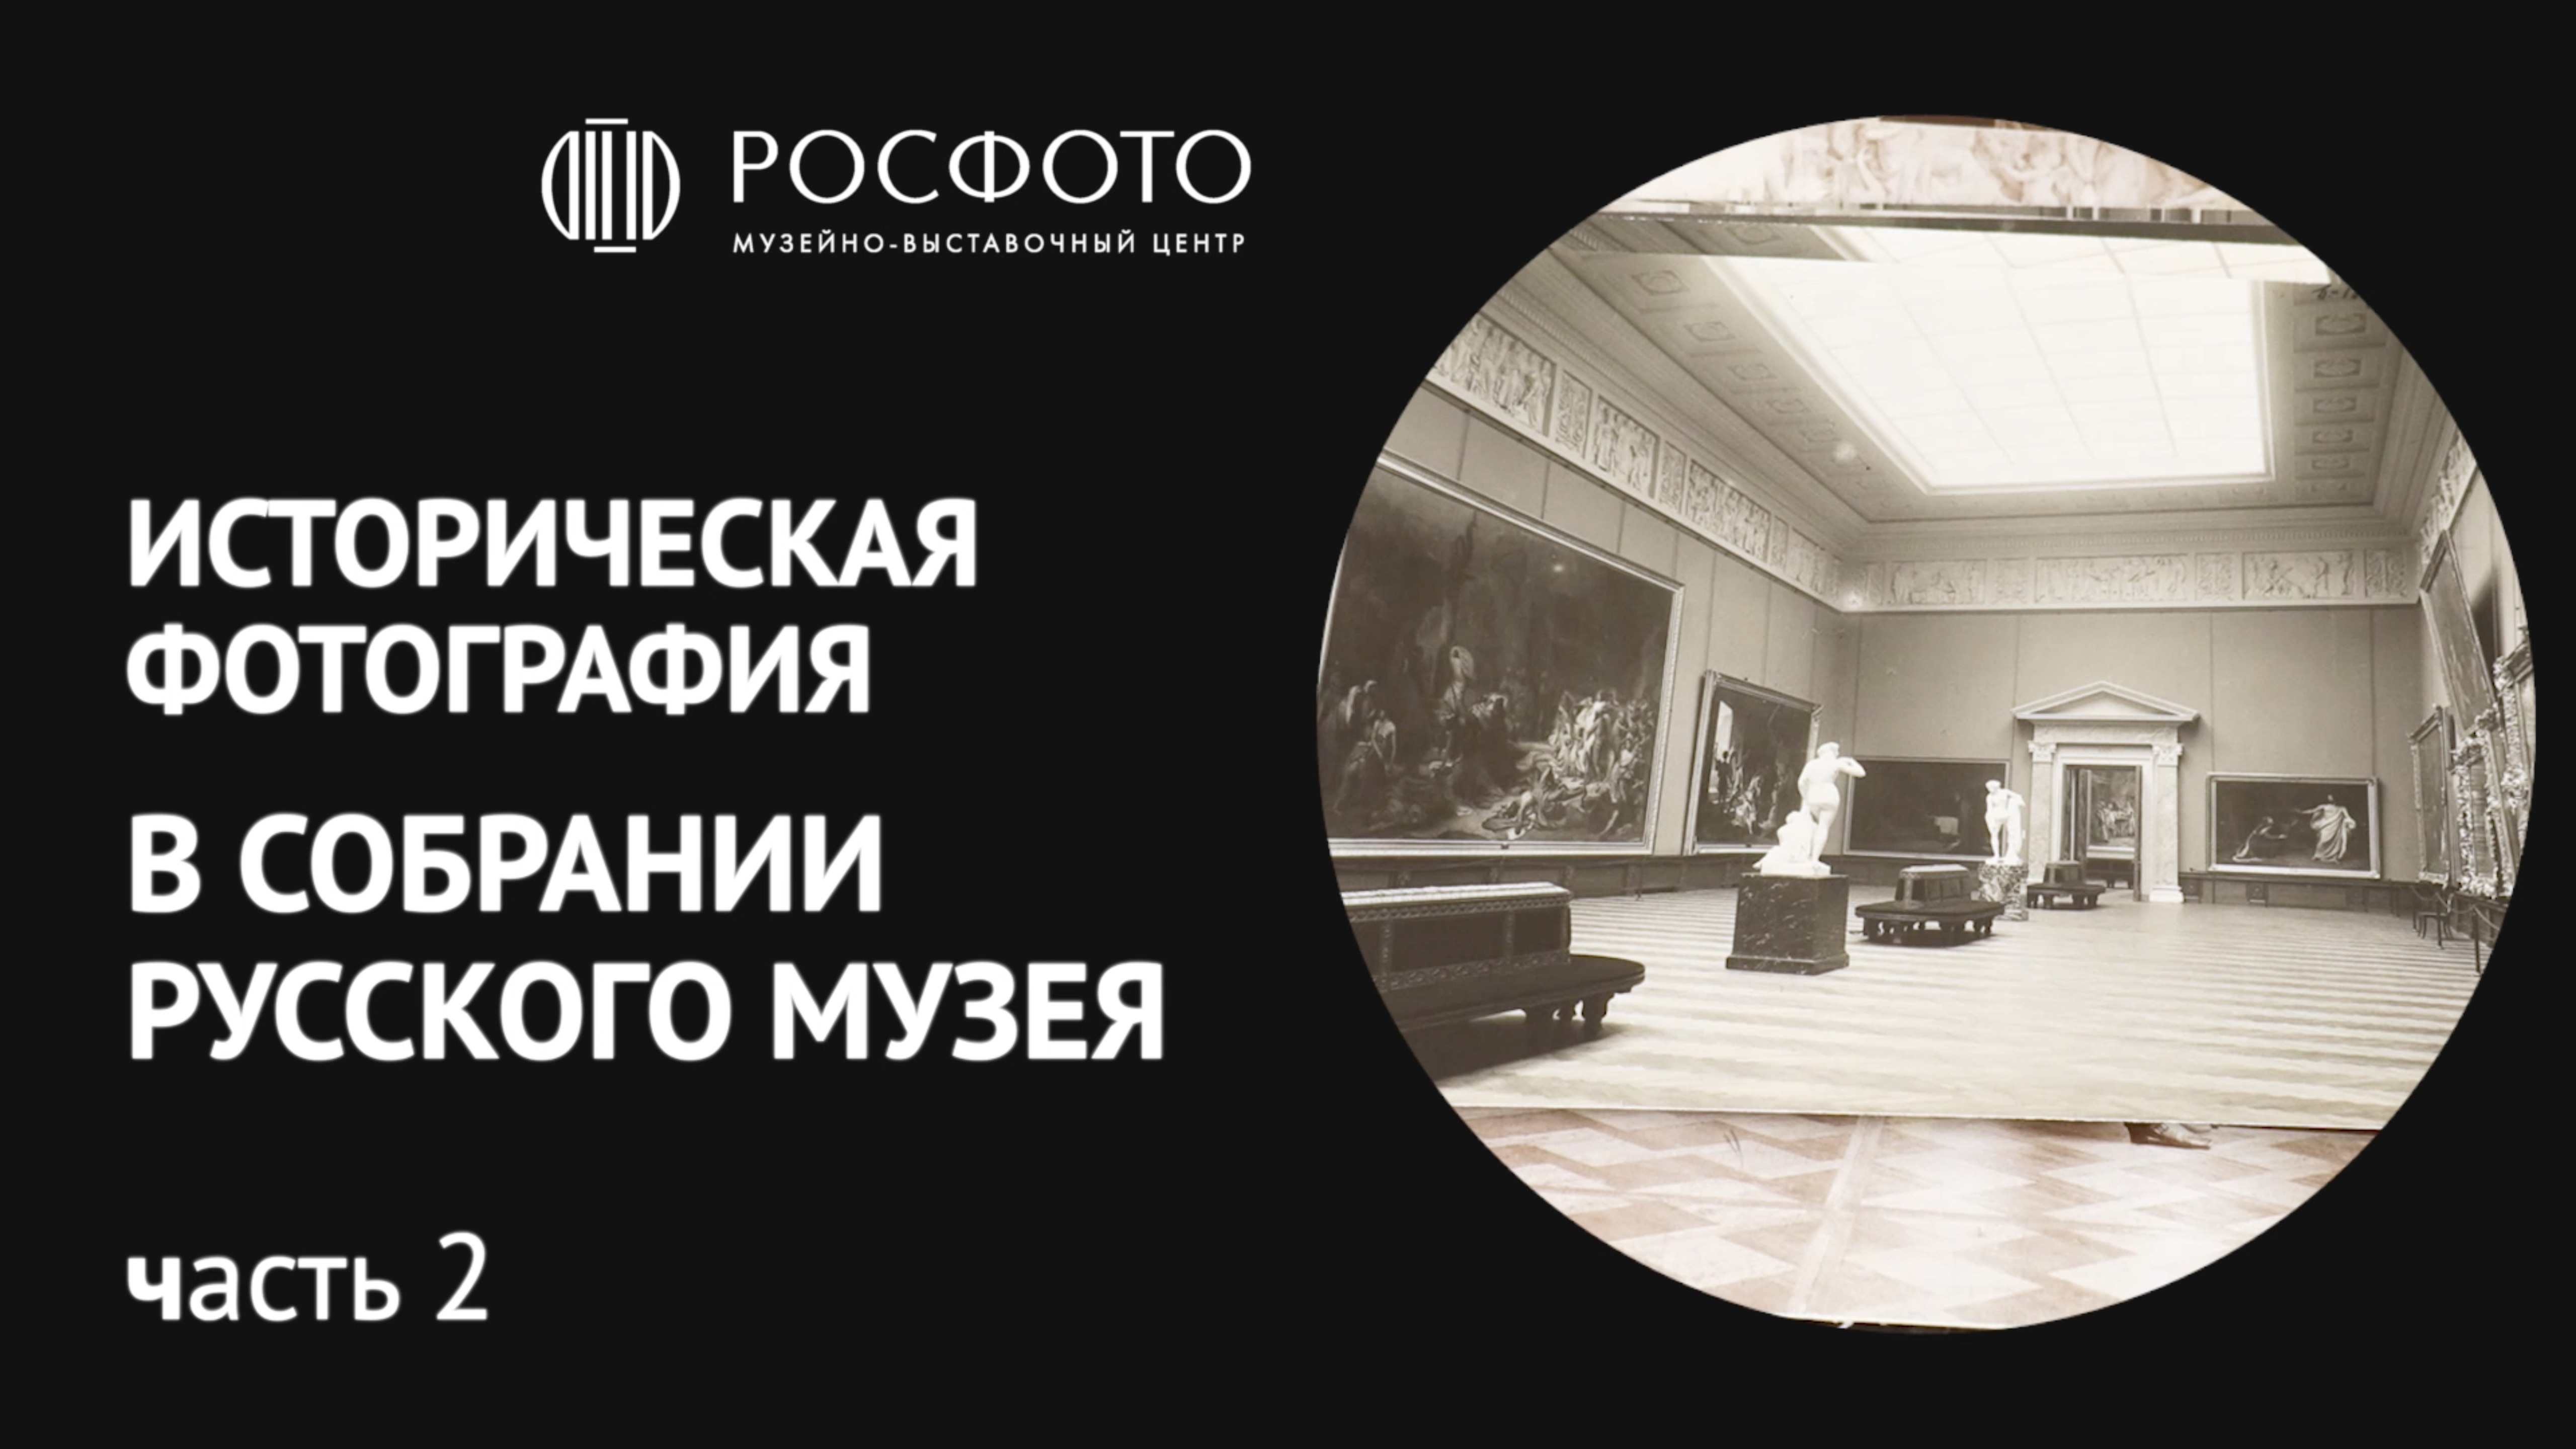 Как хранит фотографию Государственный Русский музей? Вторая часть интервью с хранителем и историком